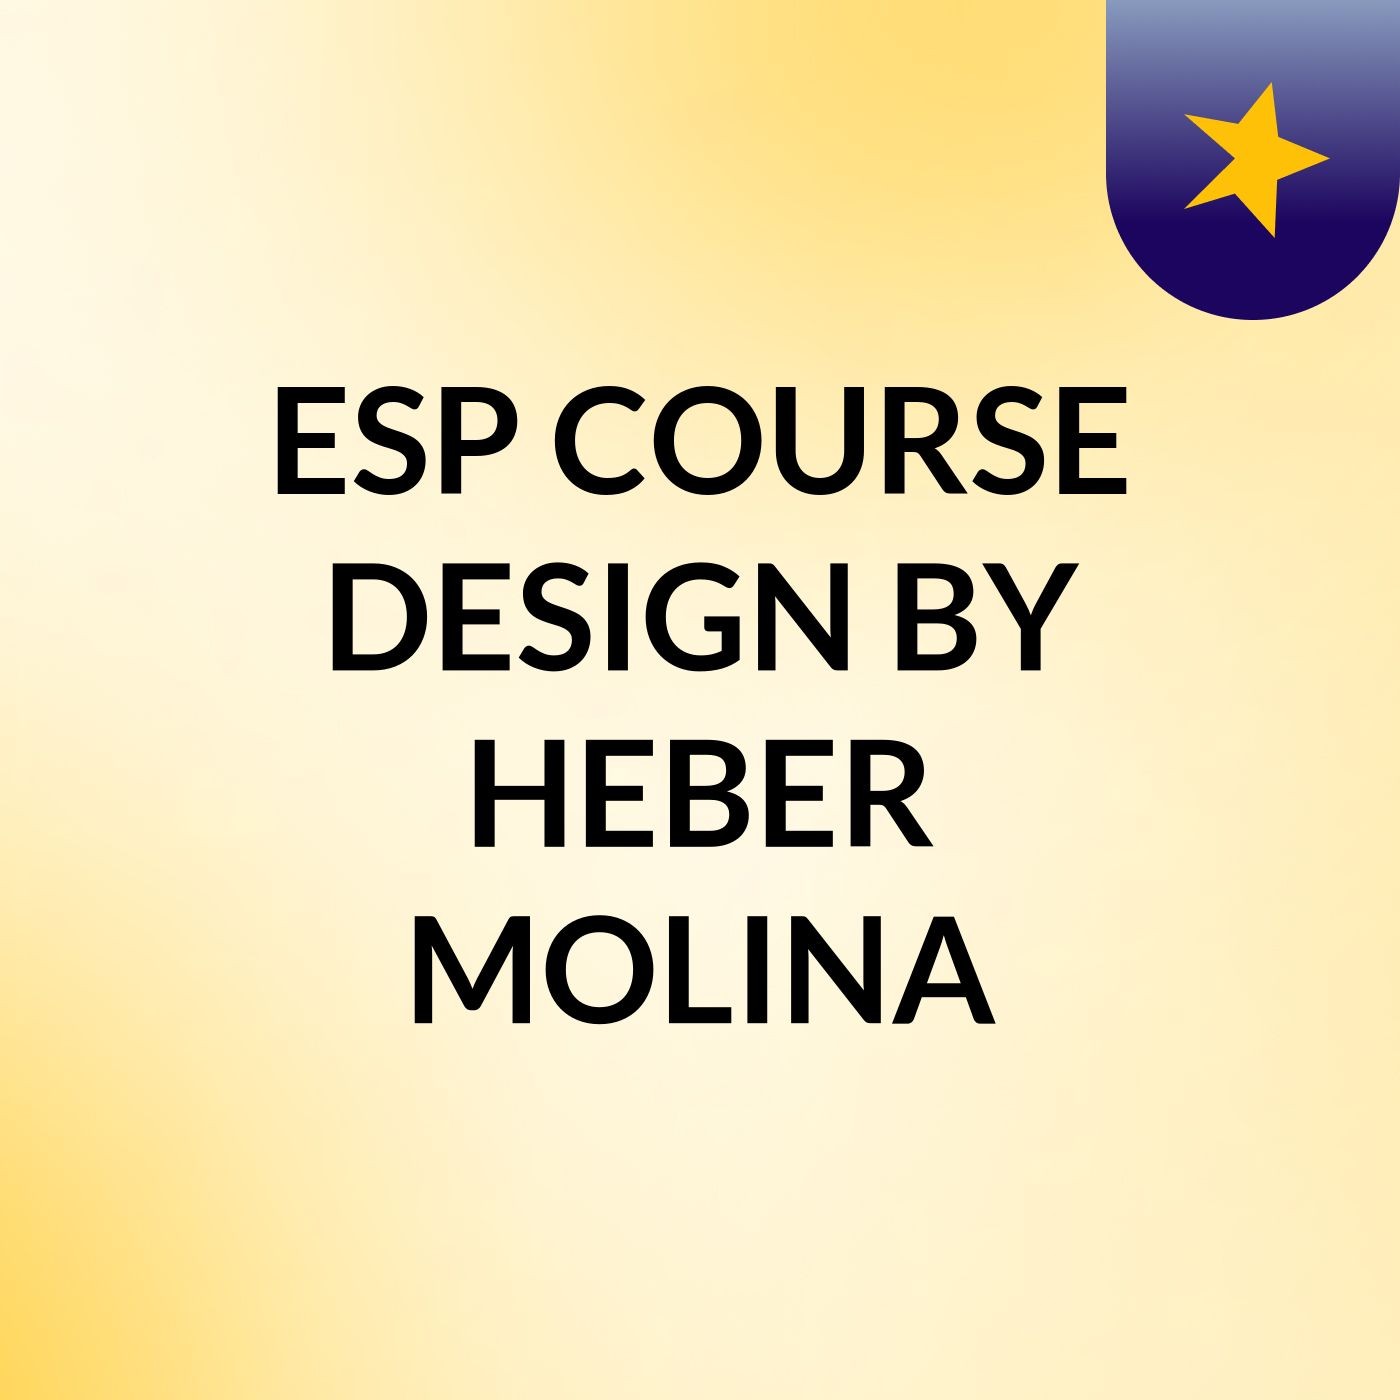 ESP COURSE DESIGN BY HEBER MOLINA